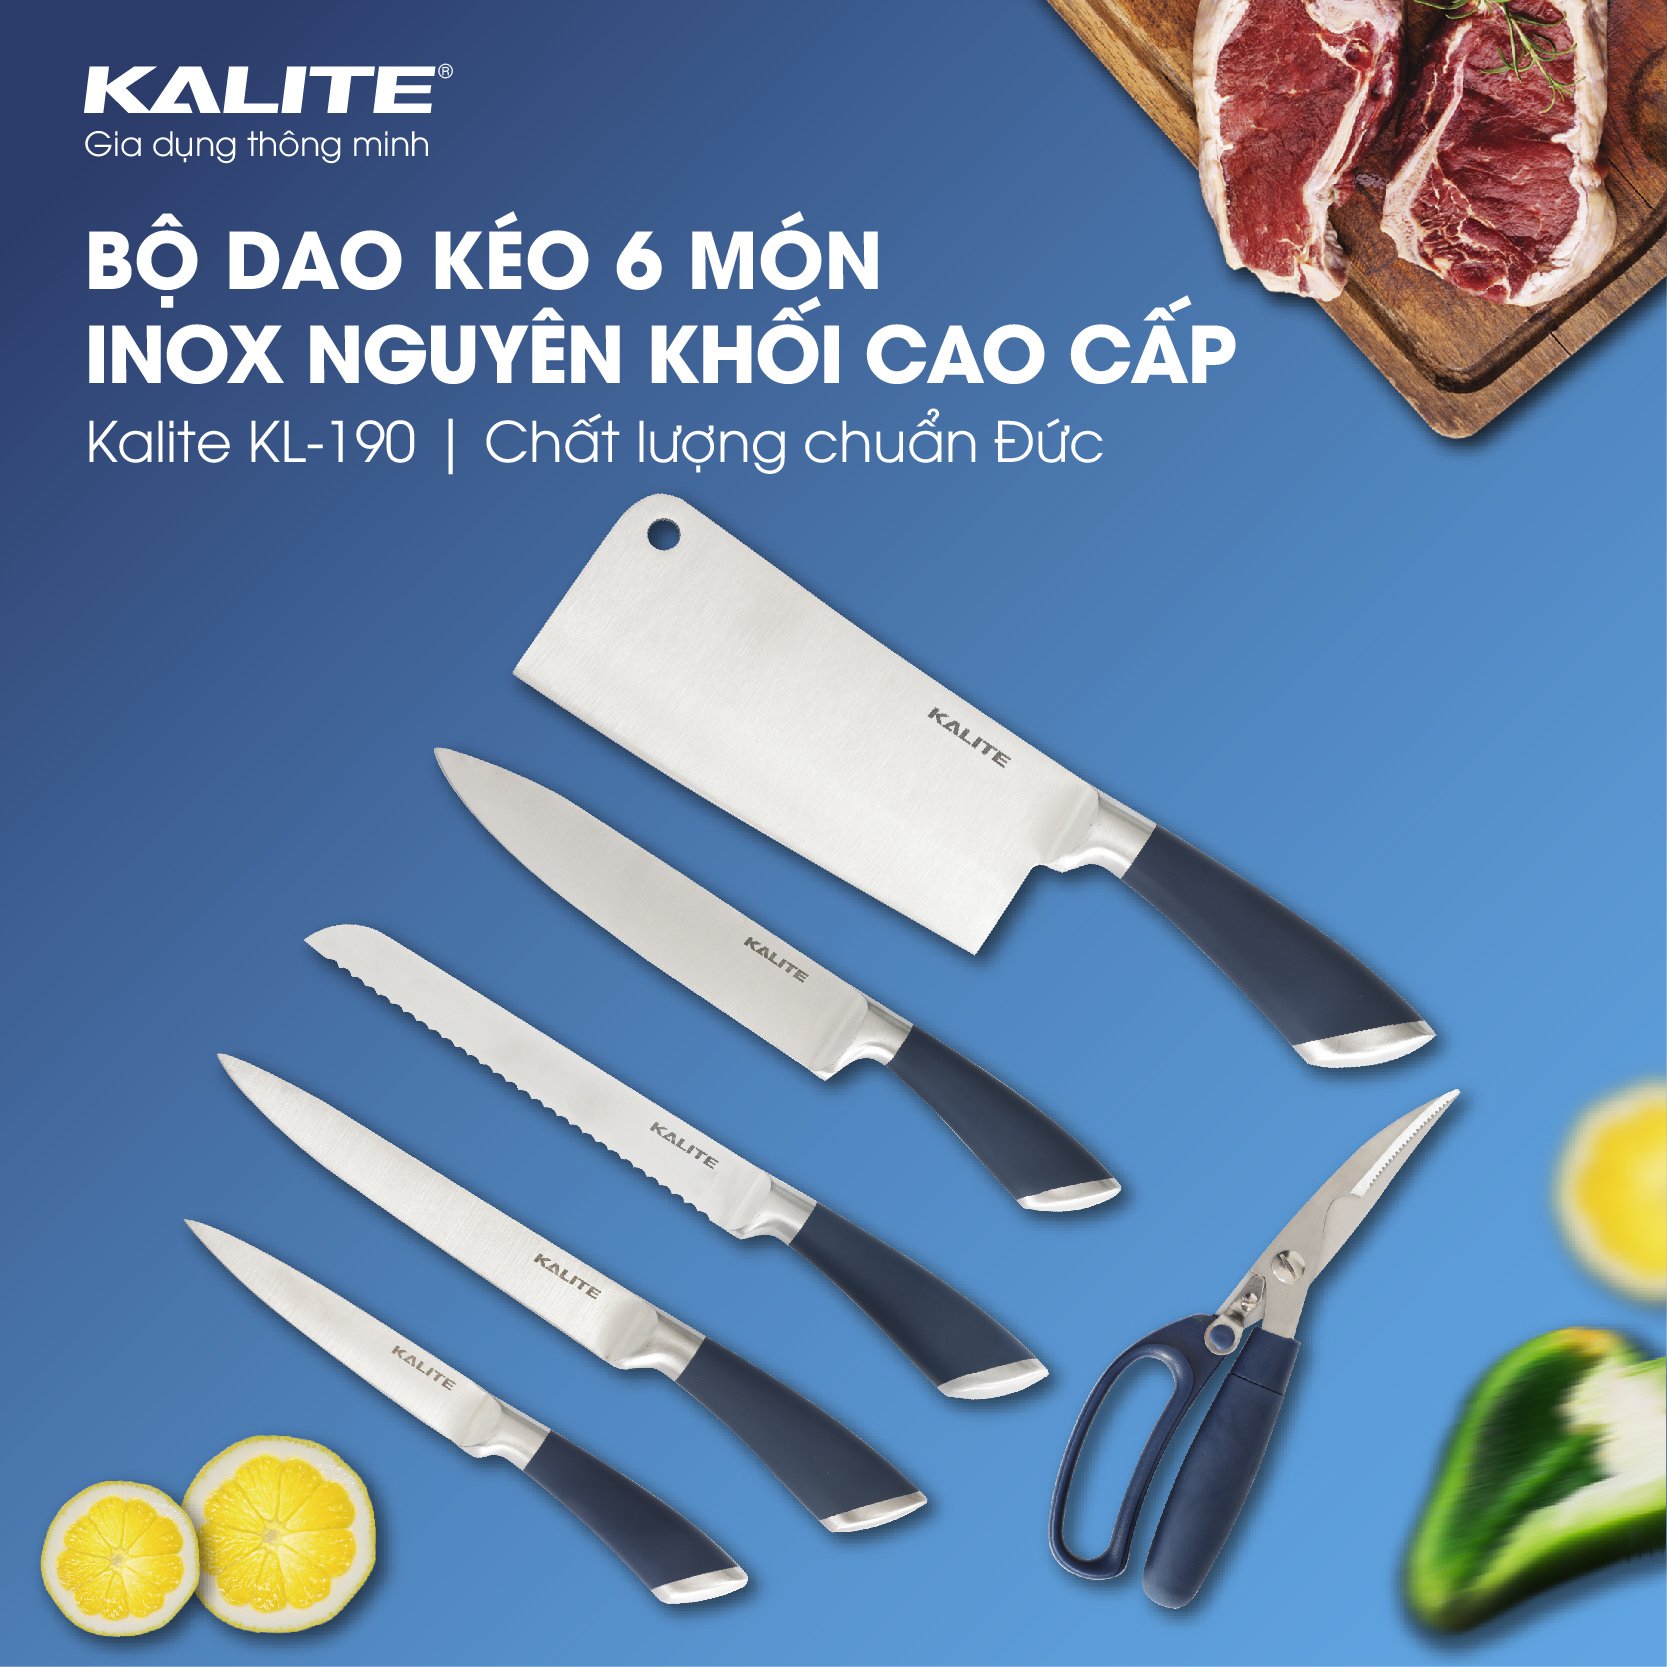 Bộ dao kéo inox Kalite KL-190